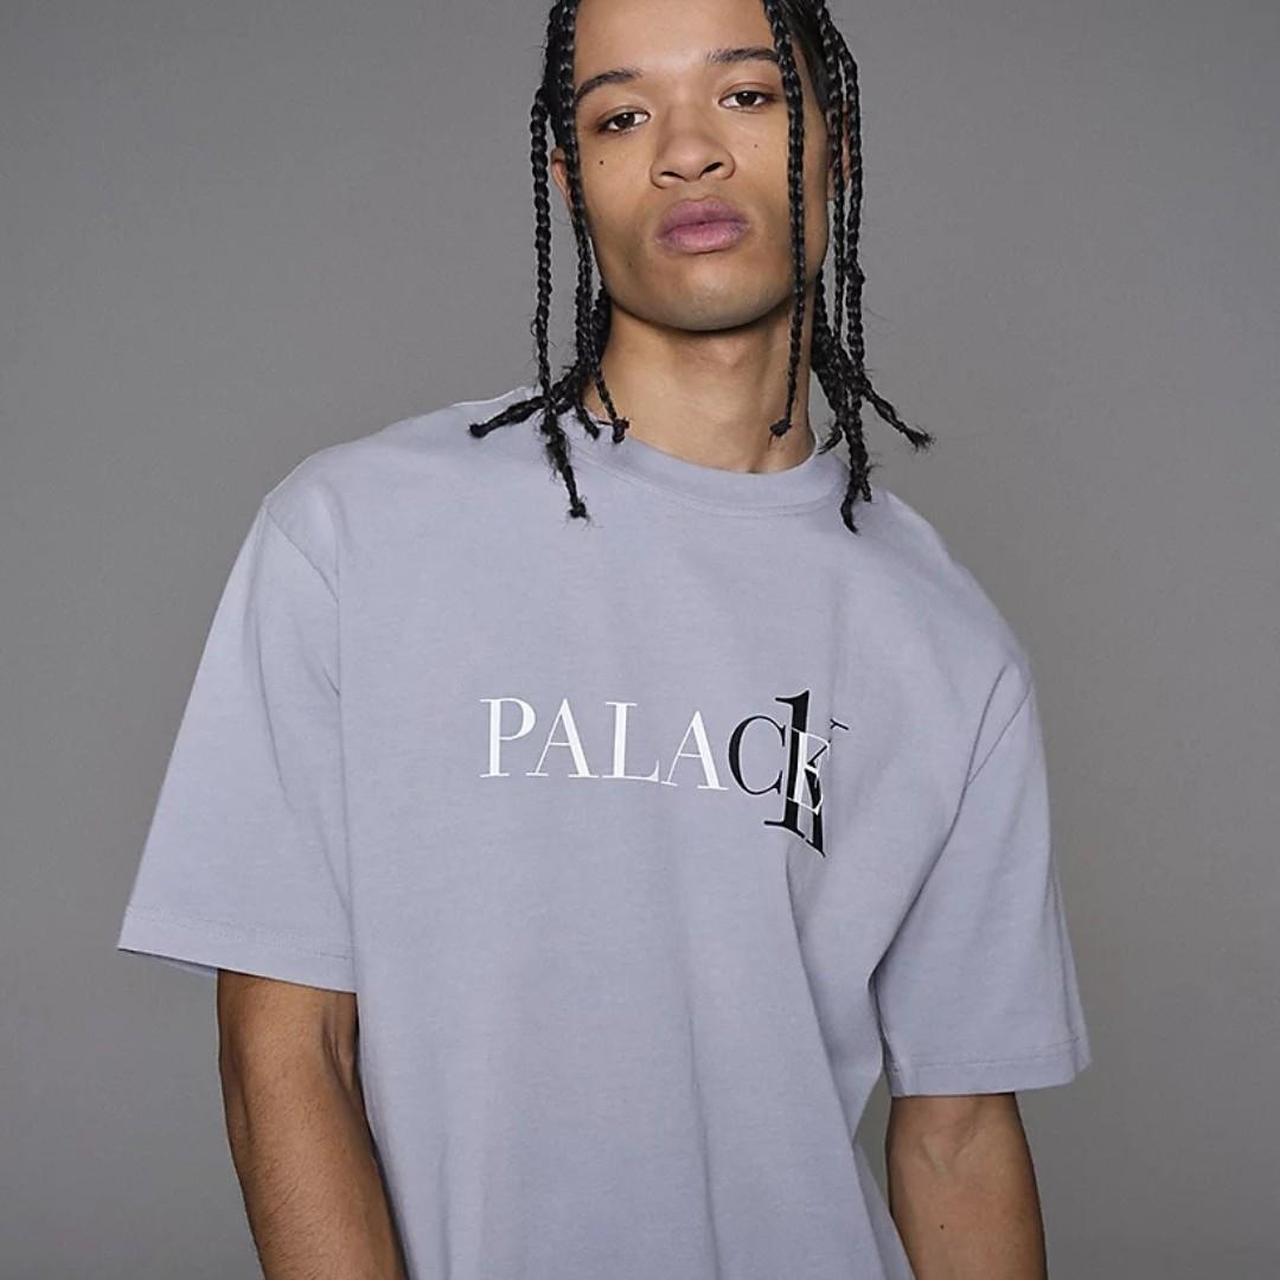 PALACE(パレス) 22SS CK1 T-shirt メンズ トップス - Tシャツ ...